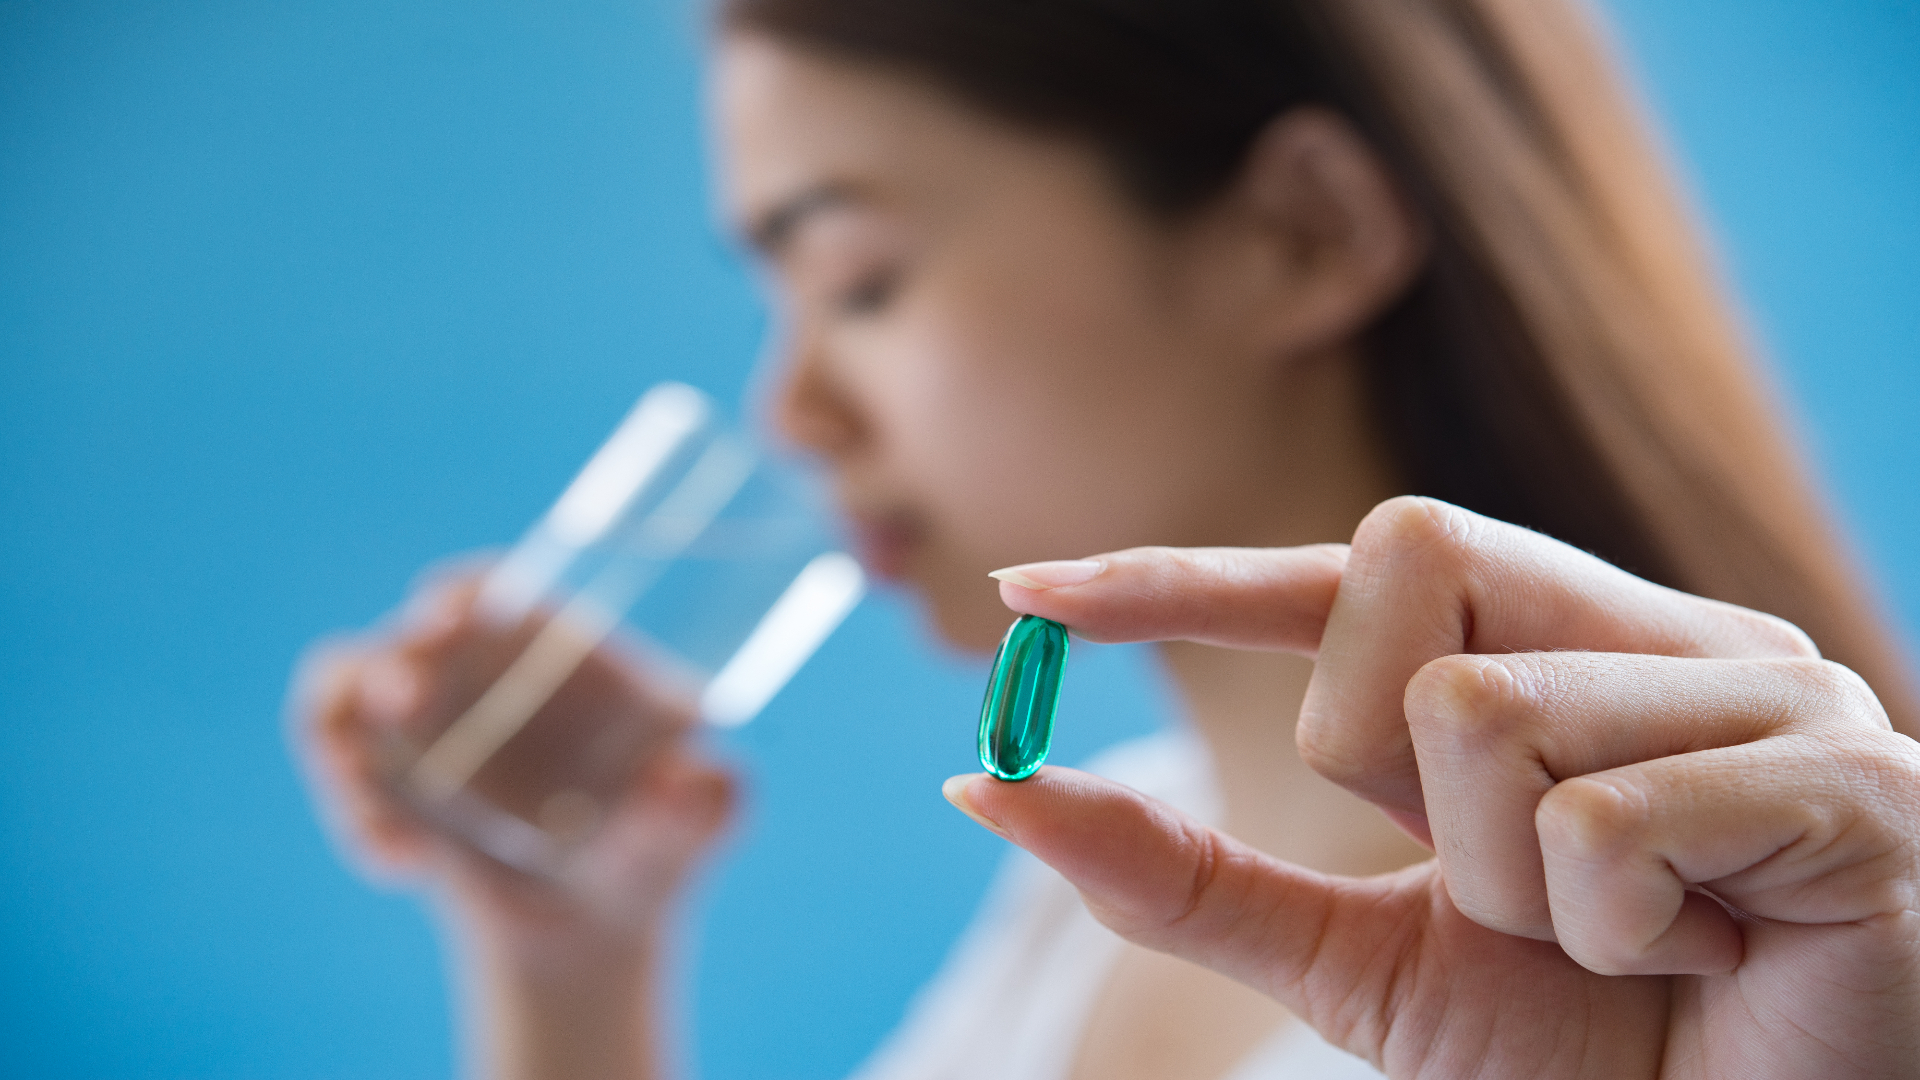 Foto de capa do artigo "Suplemento vitamínico para mulheres: quando e como usar"